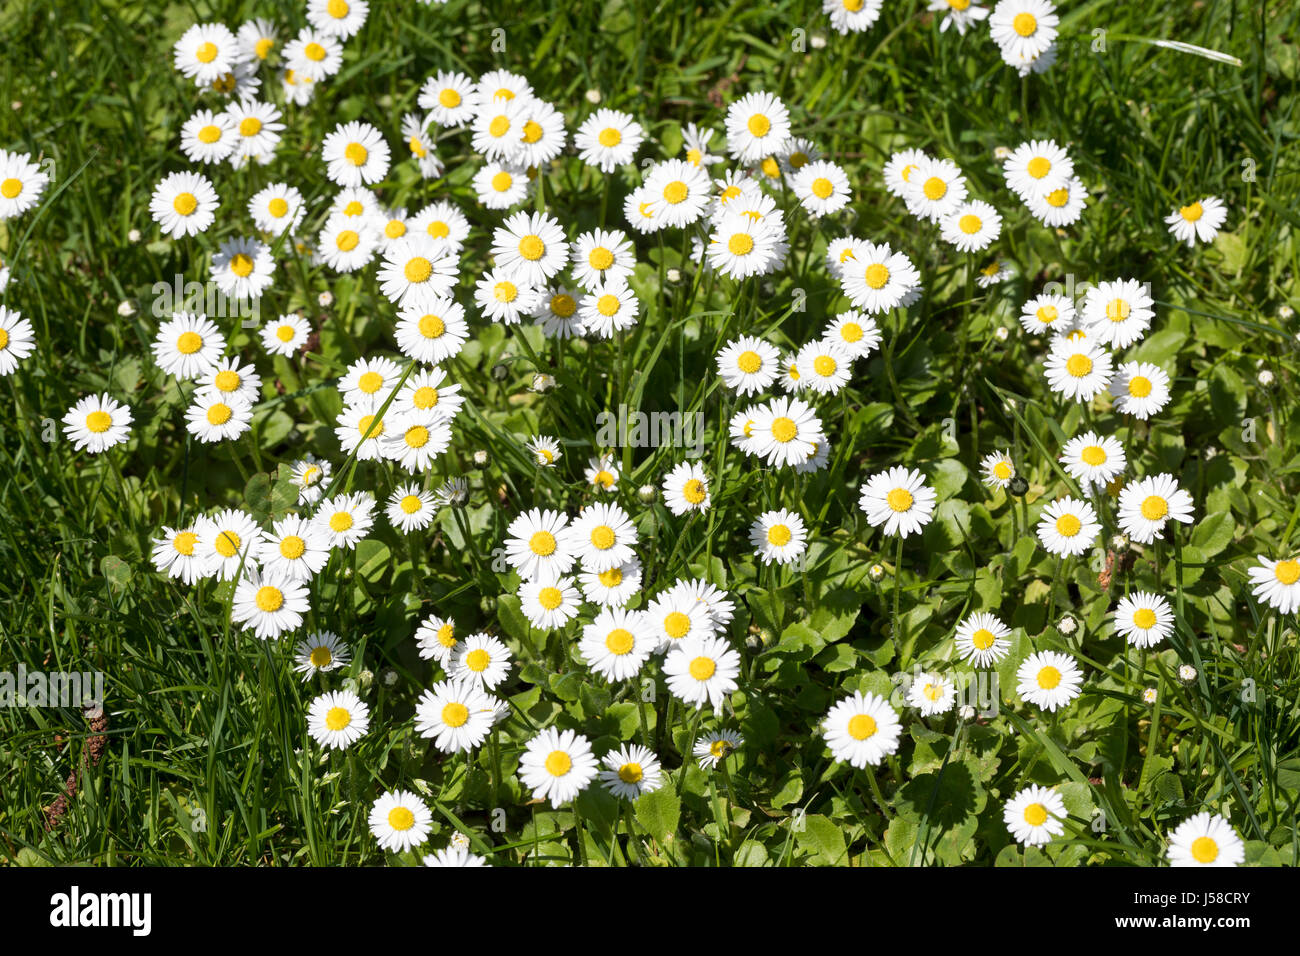 Gänseblümchen, Maßliebchen, Bellis perennis, English Daisy, Pâquerette Stock Photo